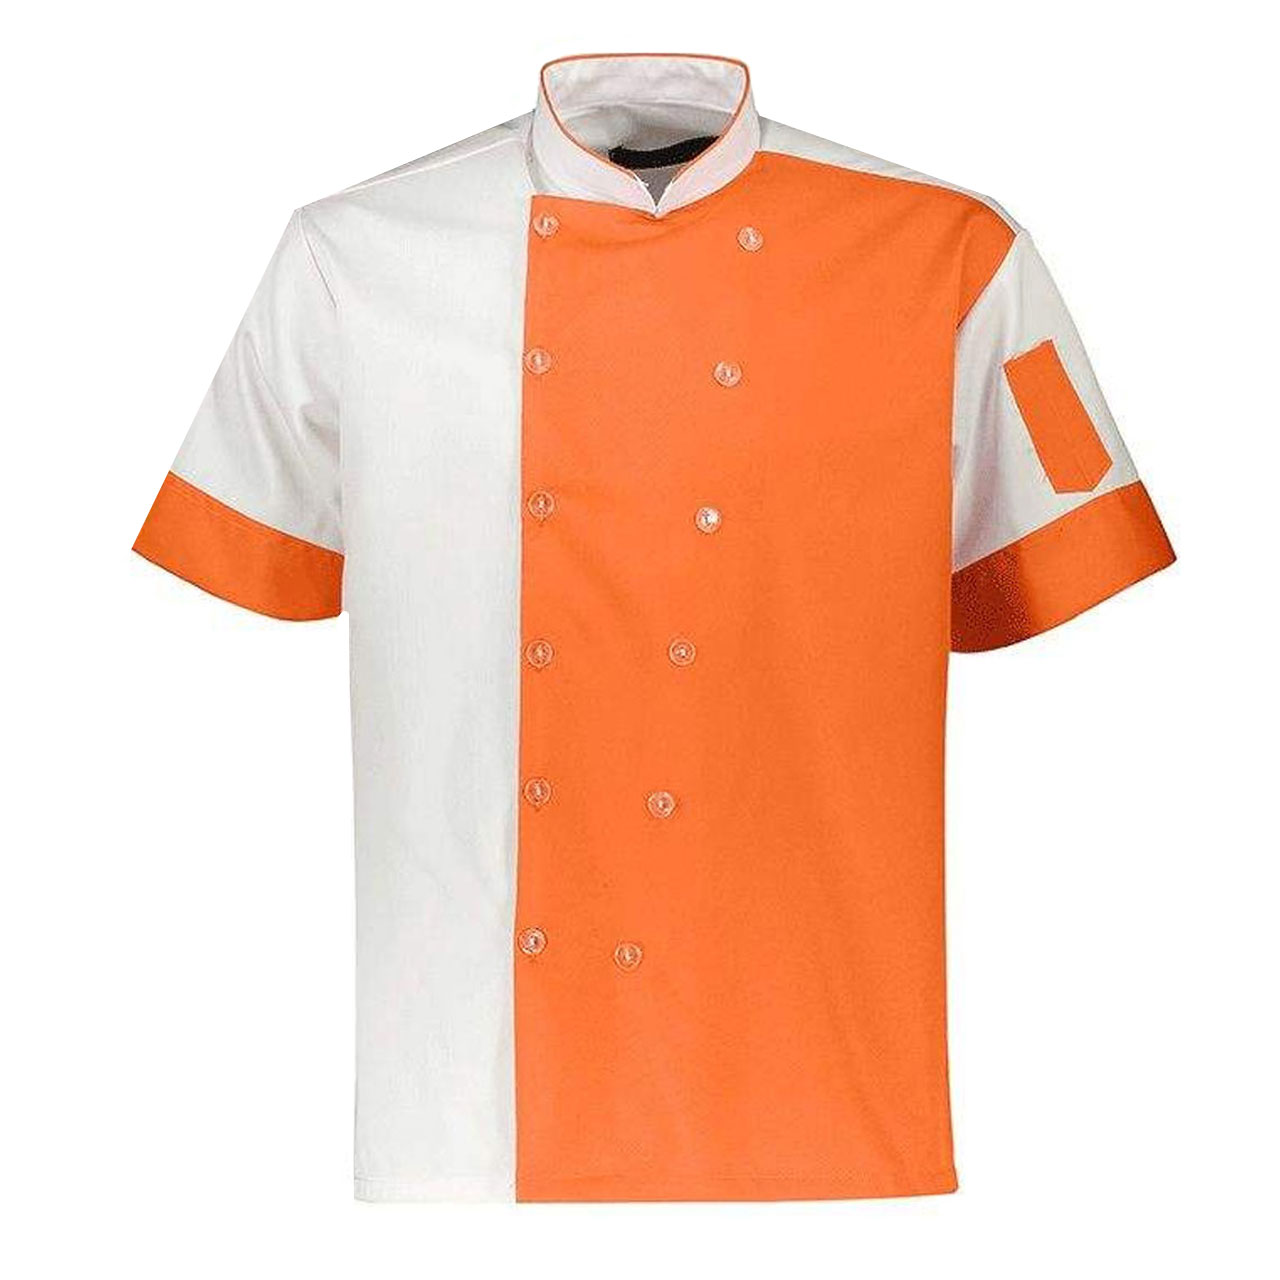 لباس کار مدل CHEF IGD2 نارنجی